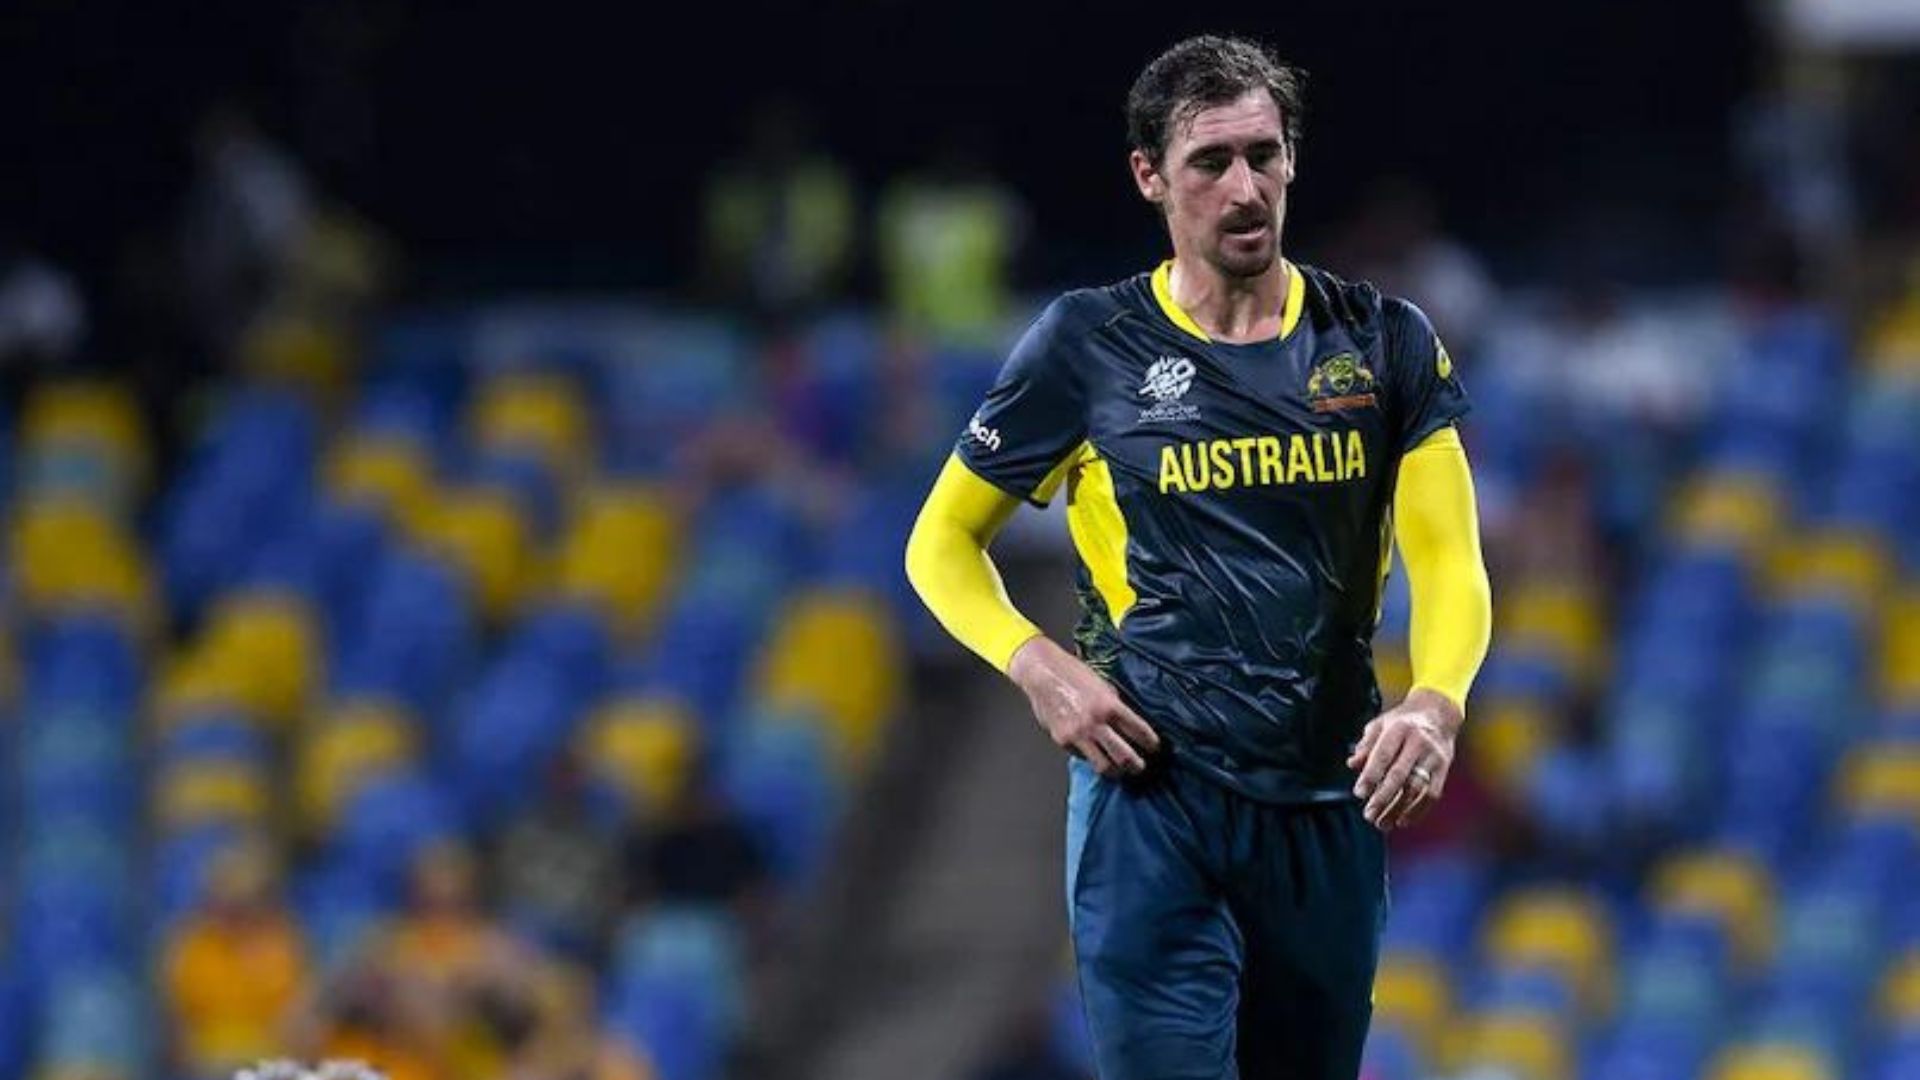 Australian Captain Mitchell Marsh, Provides Update on Starc’s Injury